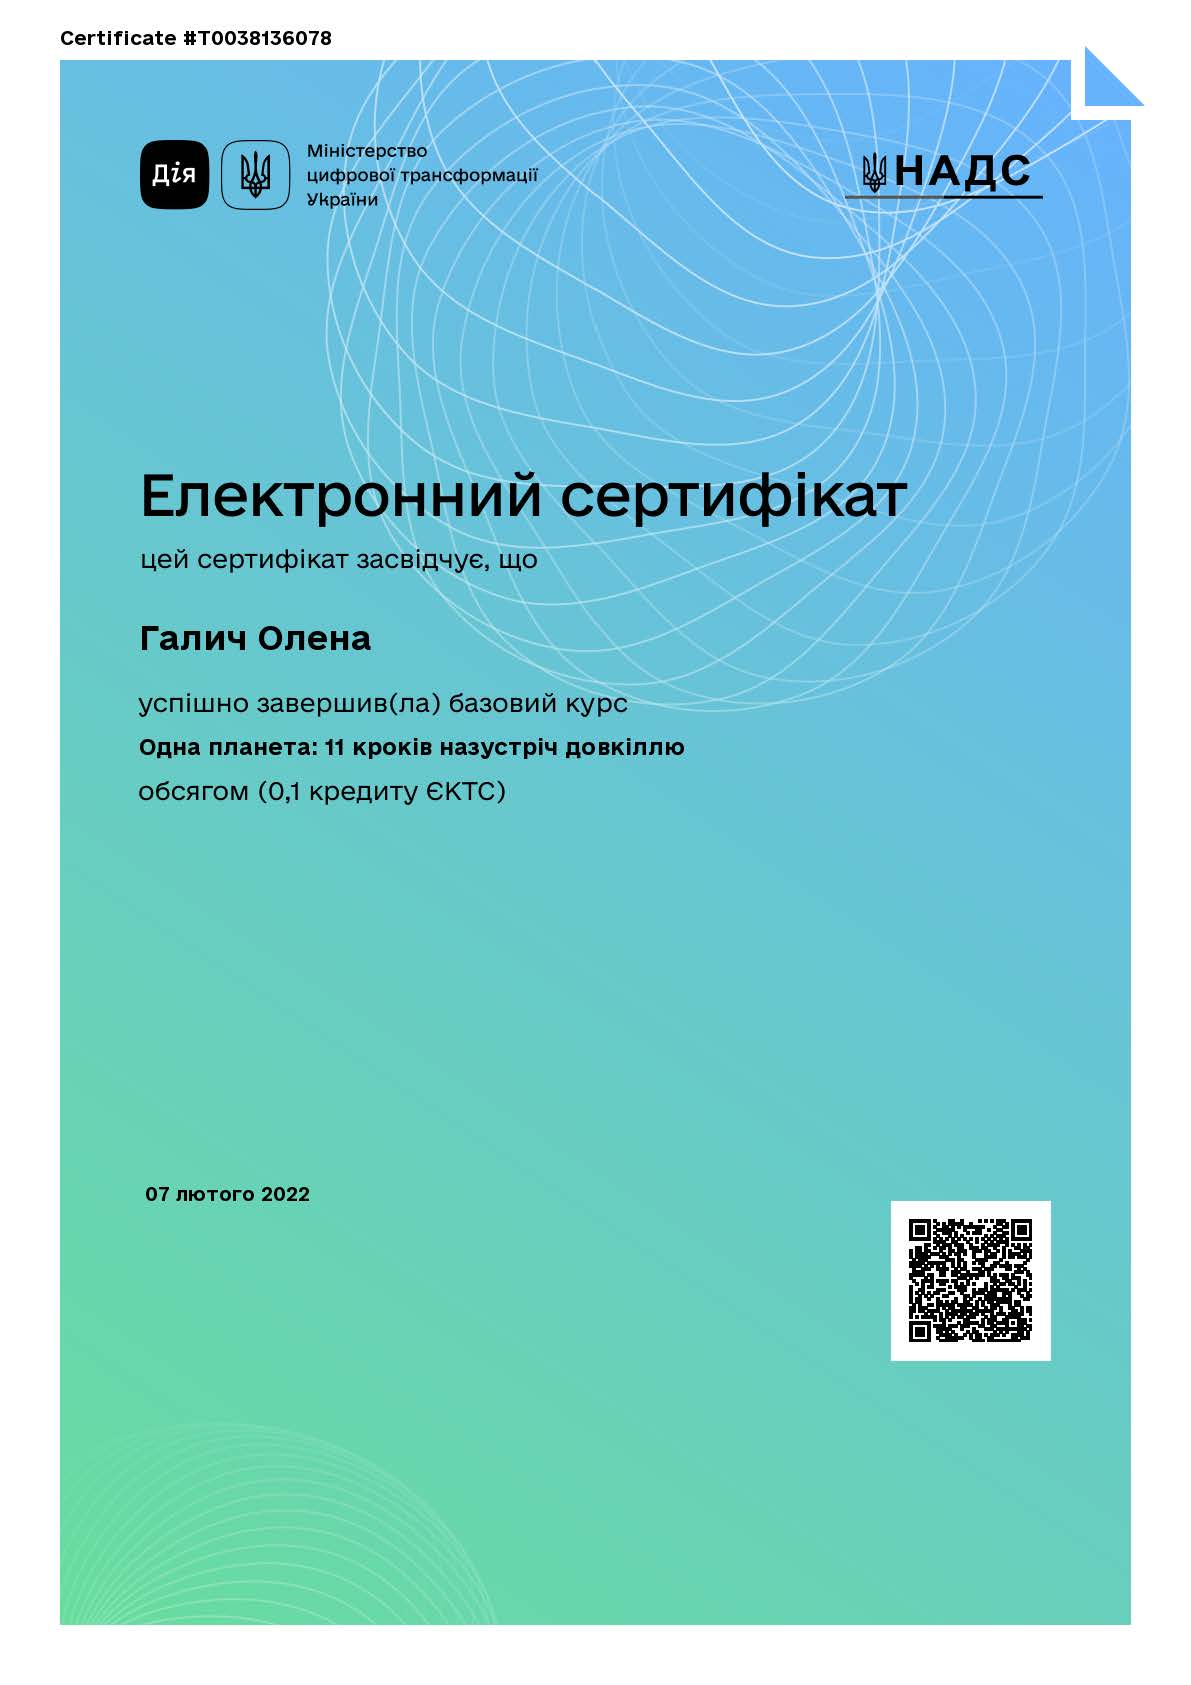 Галич Сертифікат 2